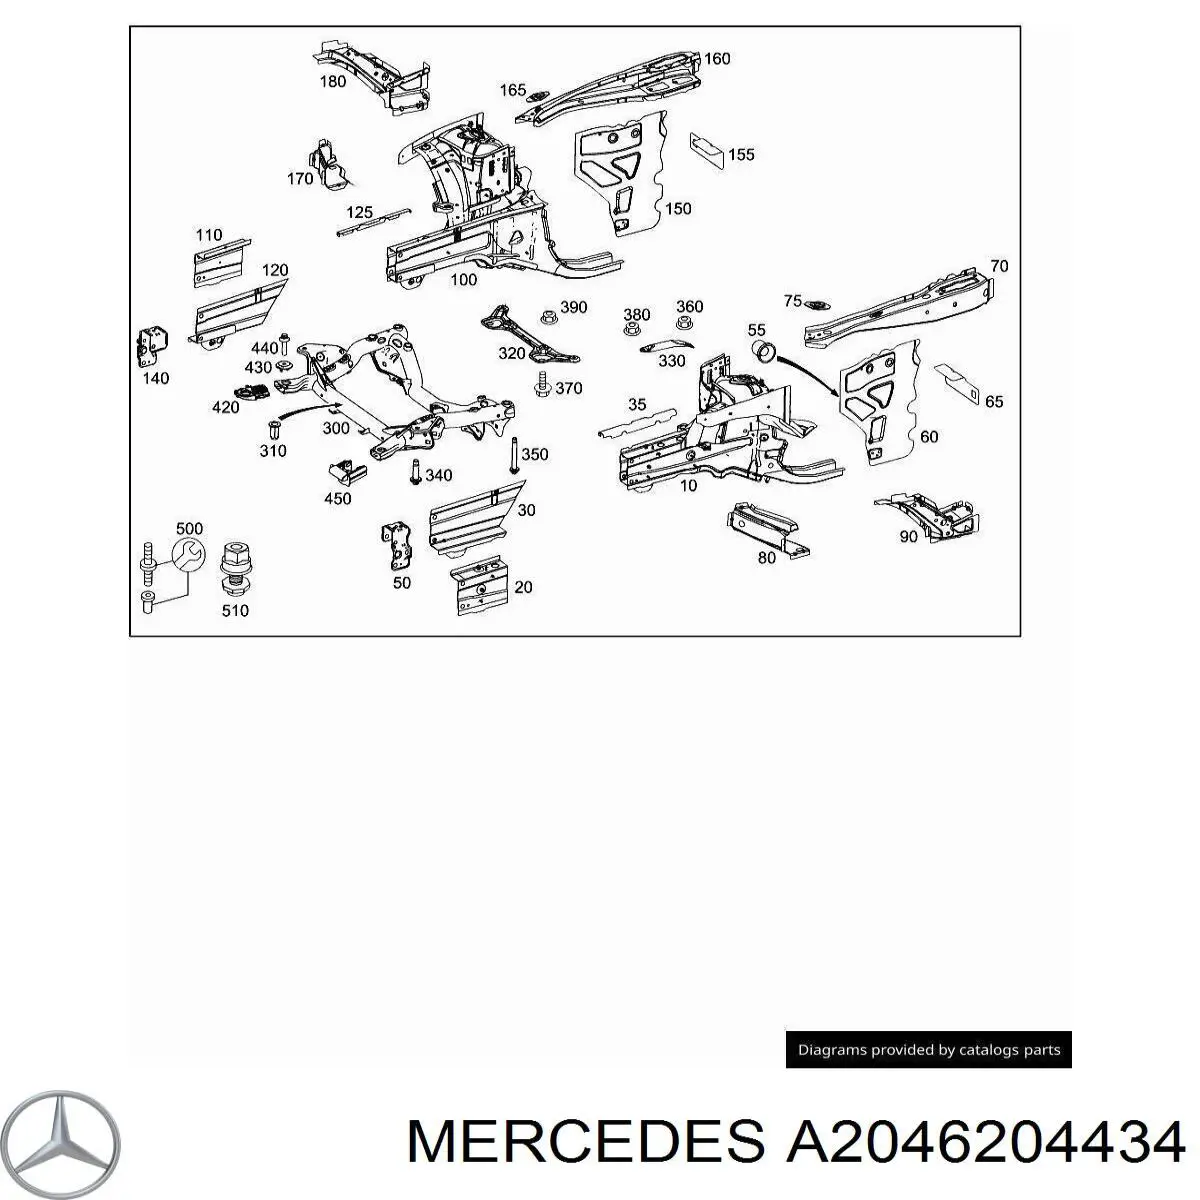 Longuero del chasis delantero derecho para Mercedes C (W204)